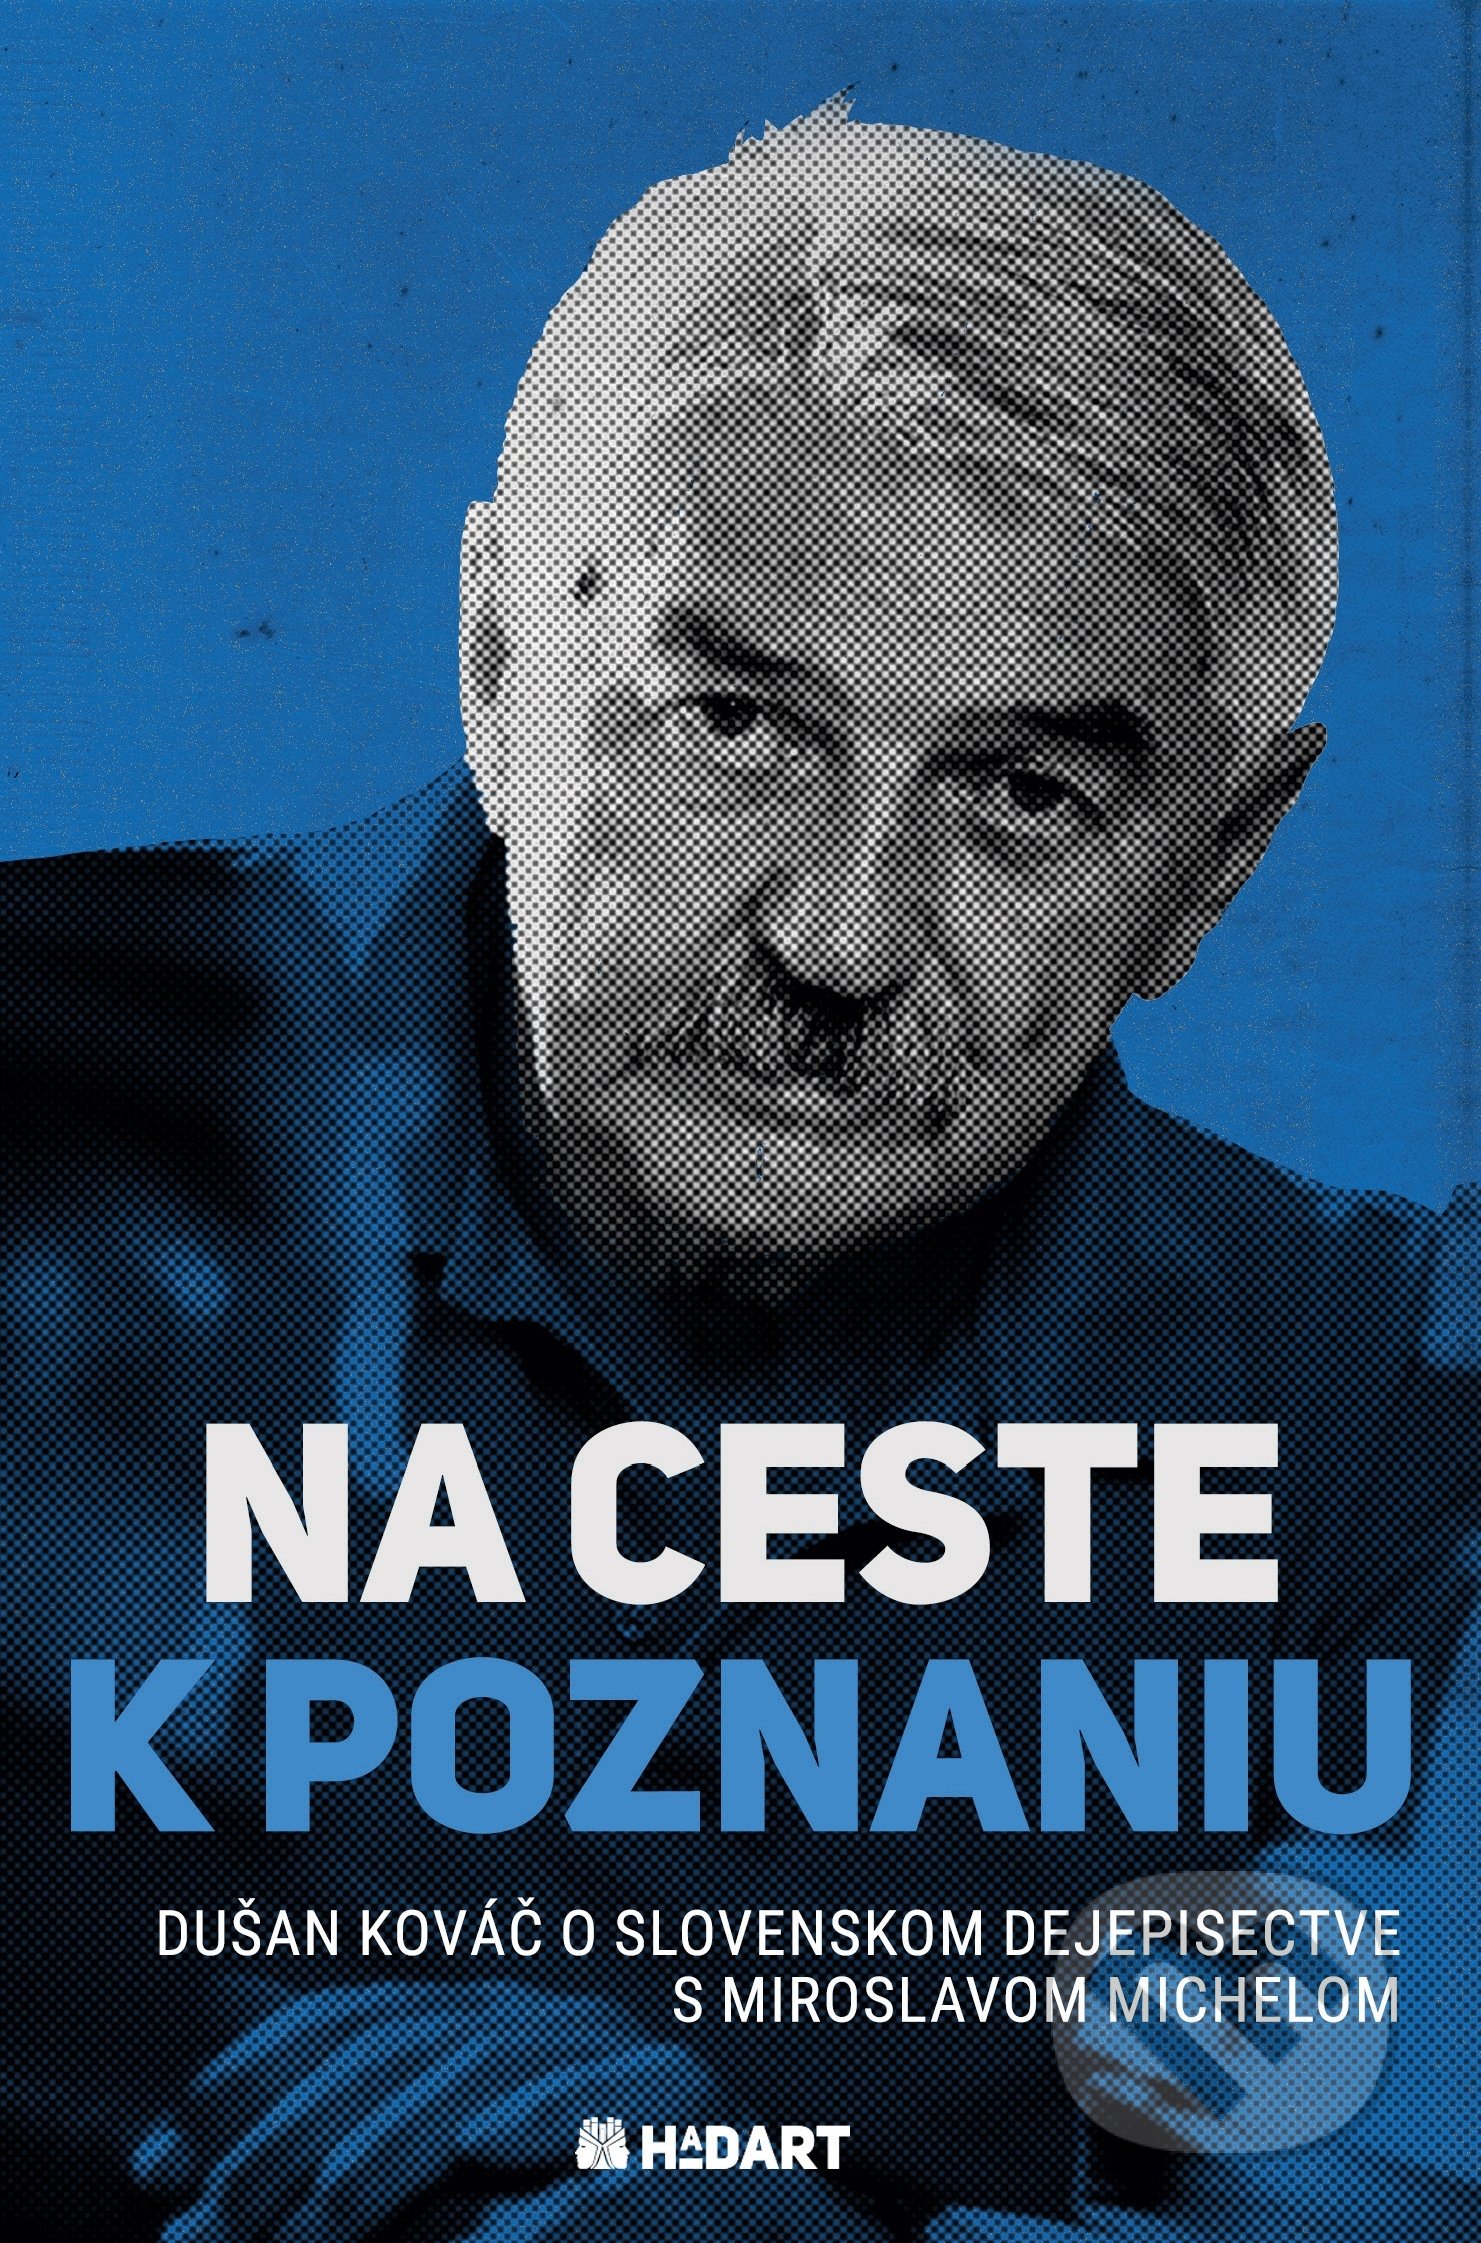 Na ceste k poznaniu - Dušan Kováč, Miroslav Michela, Hadart Publishing, 2021